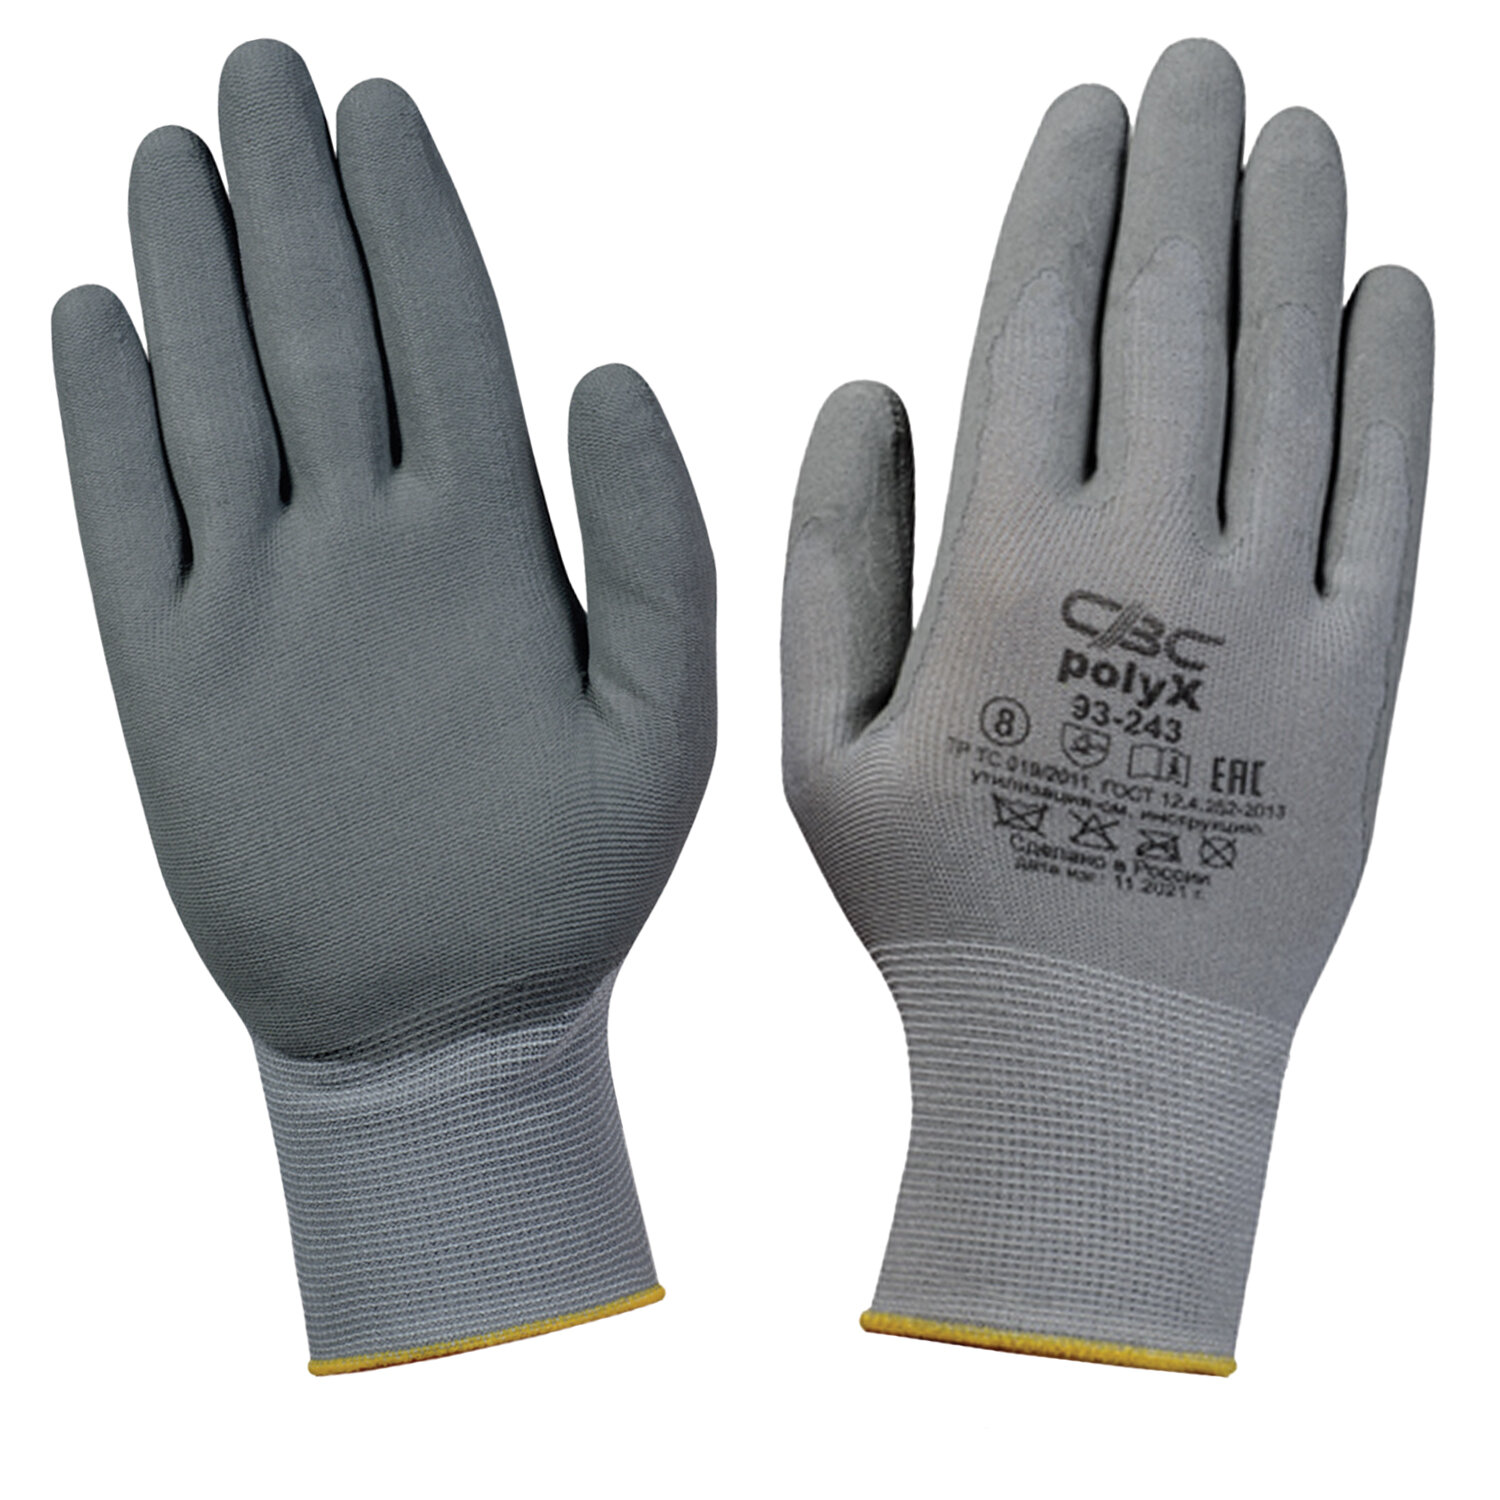 Перчатки полиэфирные СВС, размер L, 10 пар перчатки защитные свс поликс 93 243 эластичные с полиуретановым покрытием